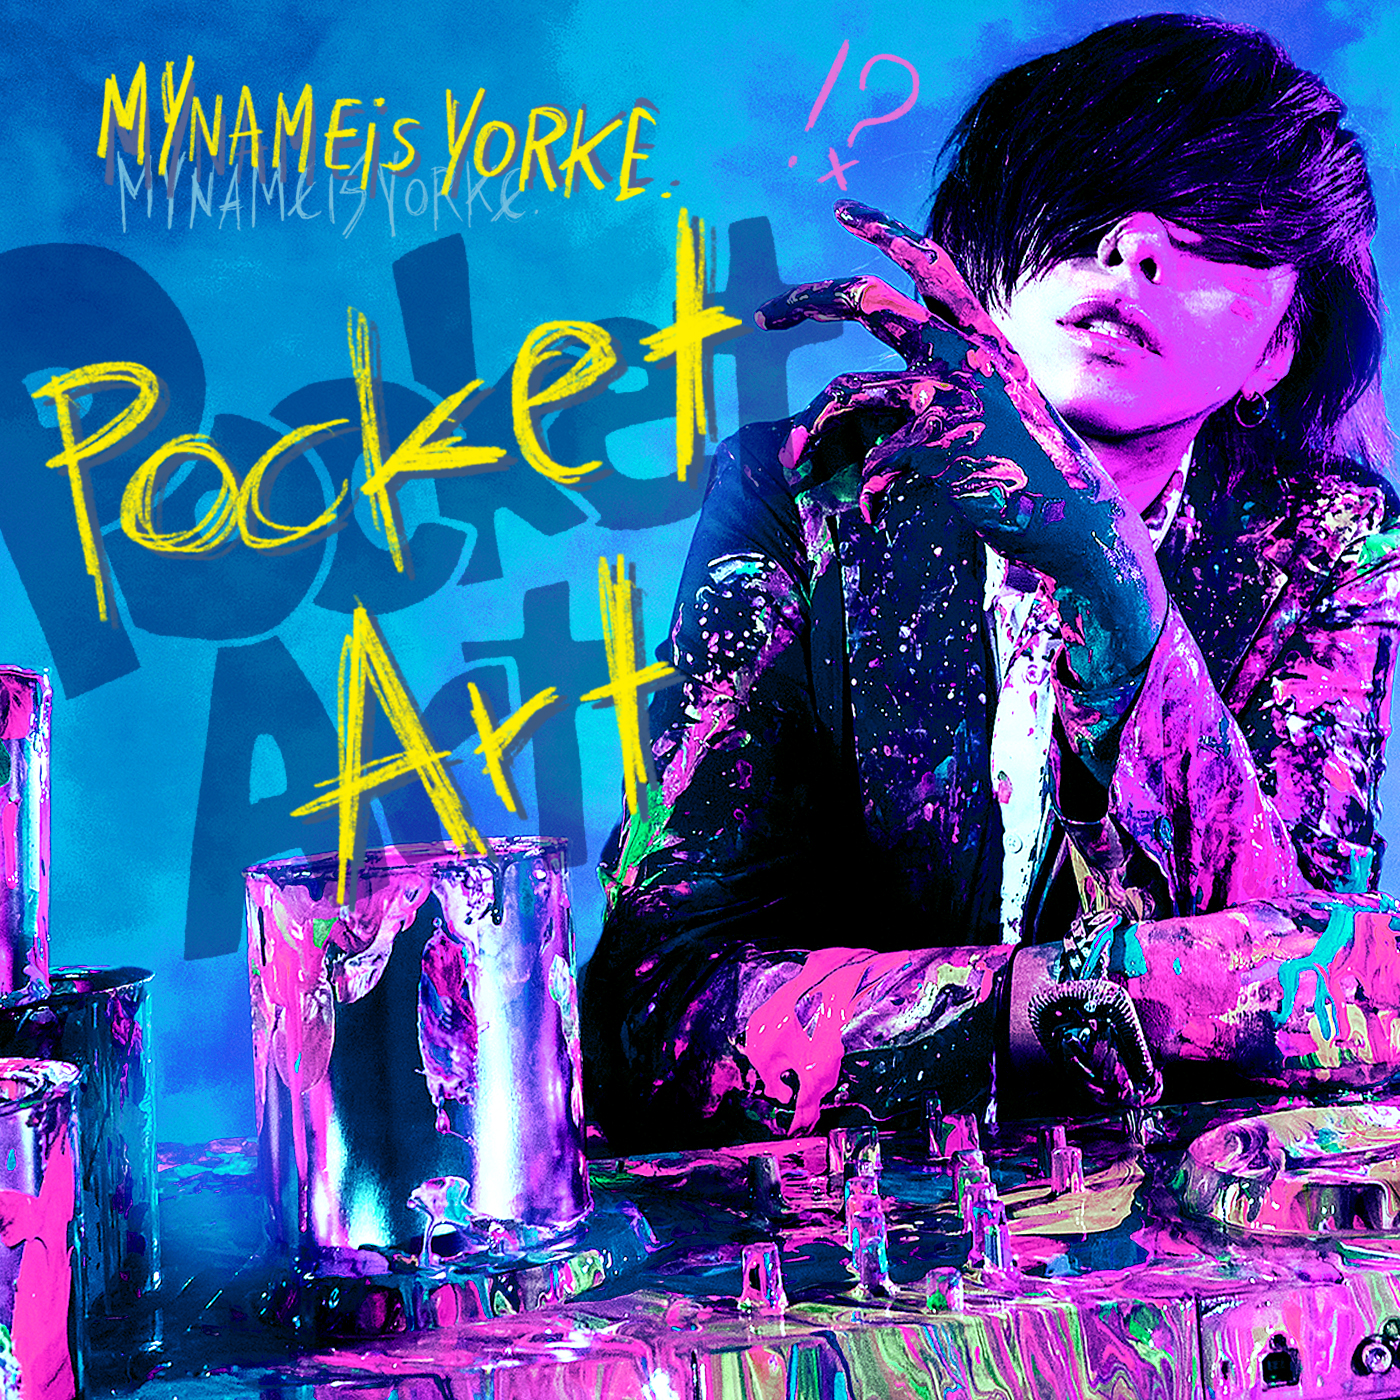 #86 YORKE. Pocket Art【3月新緑の季節をART目線で感じてみます】